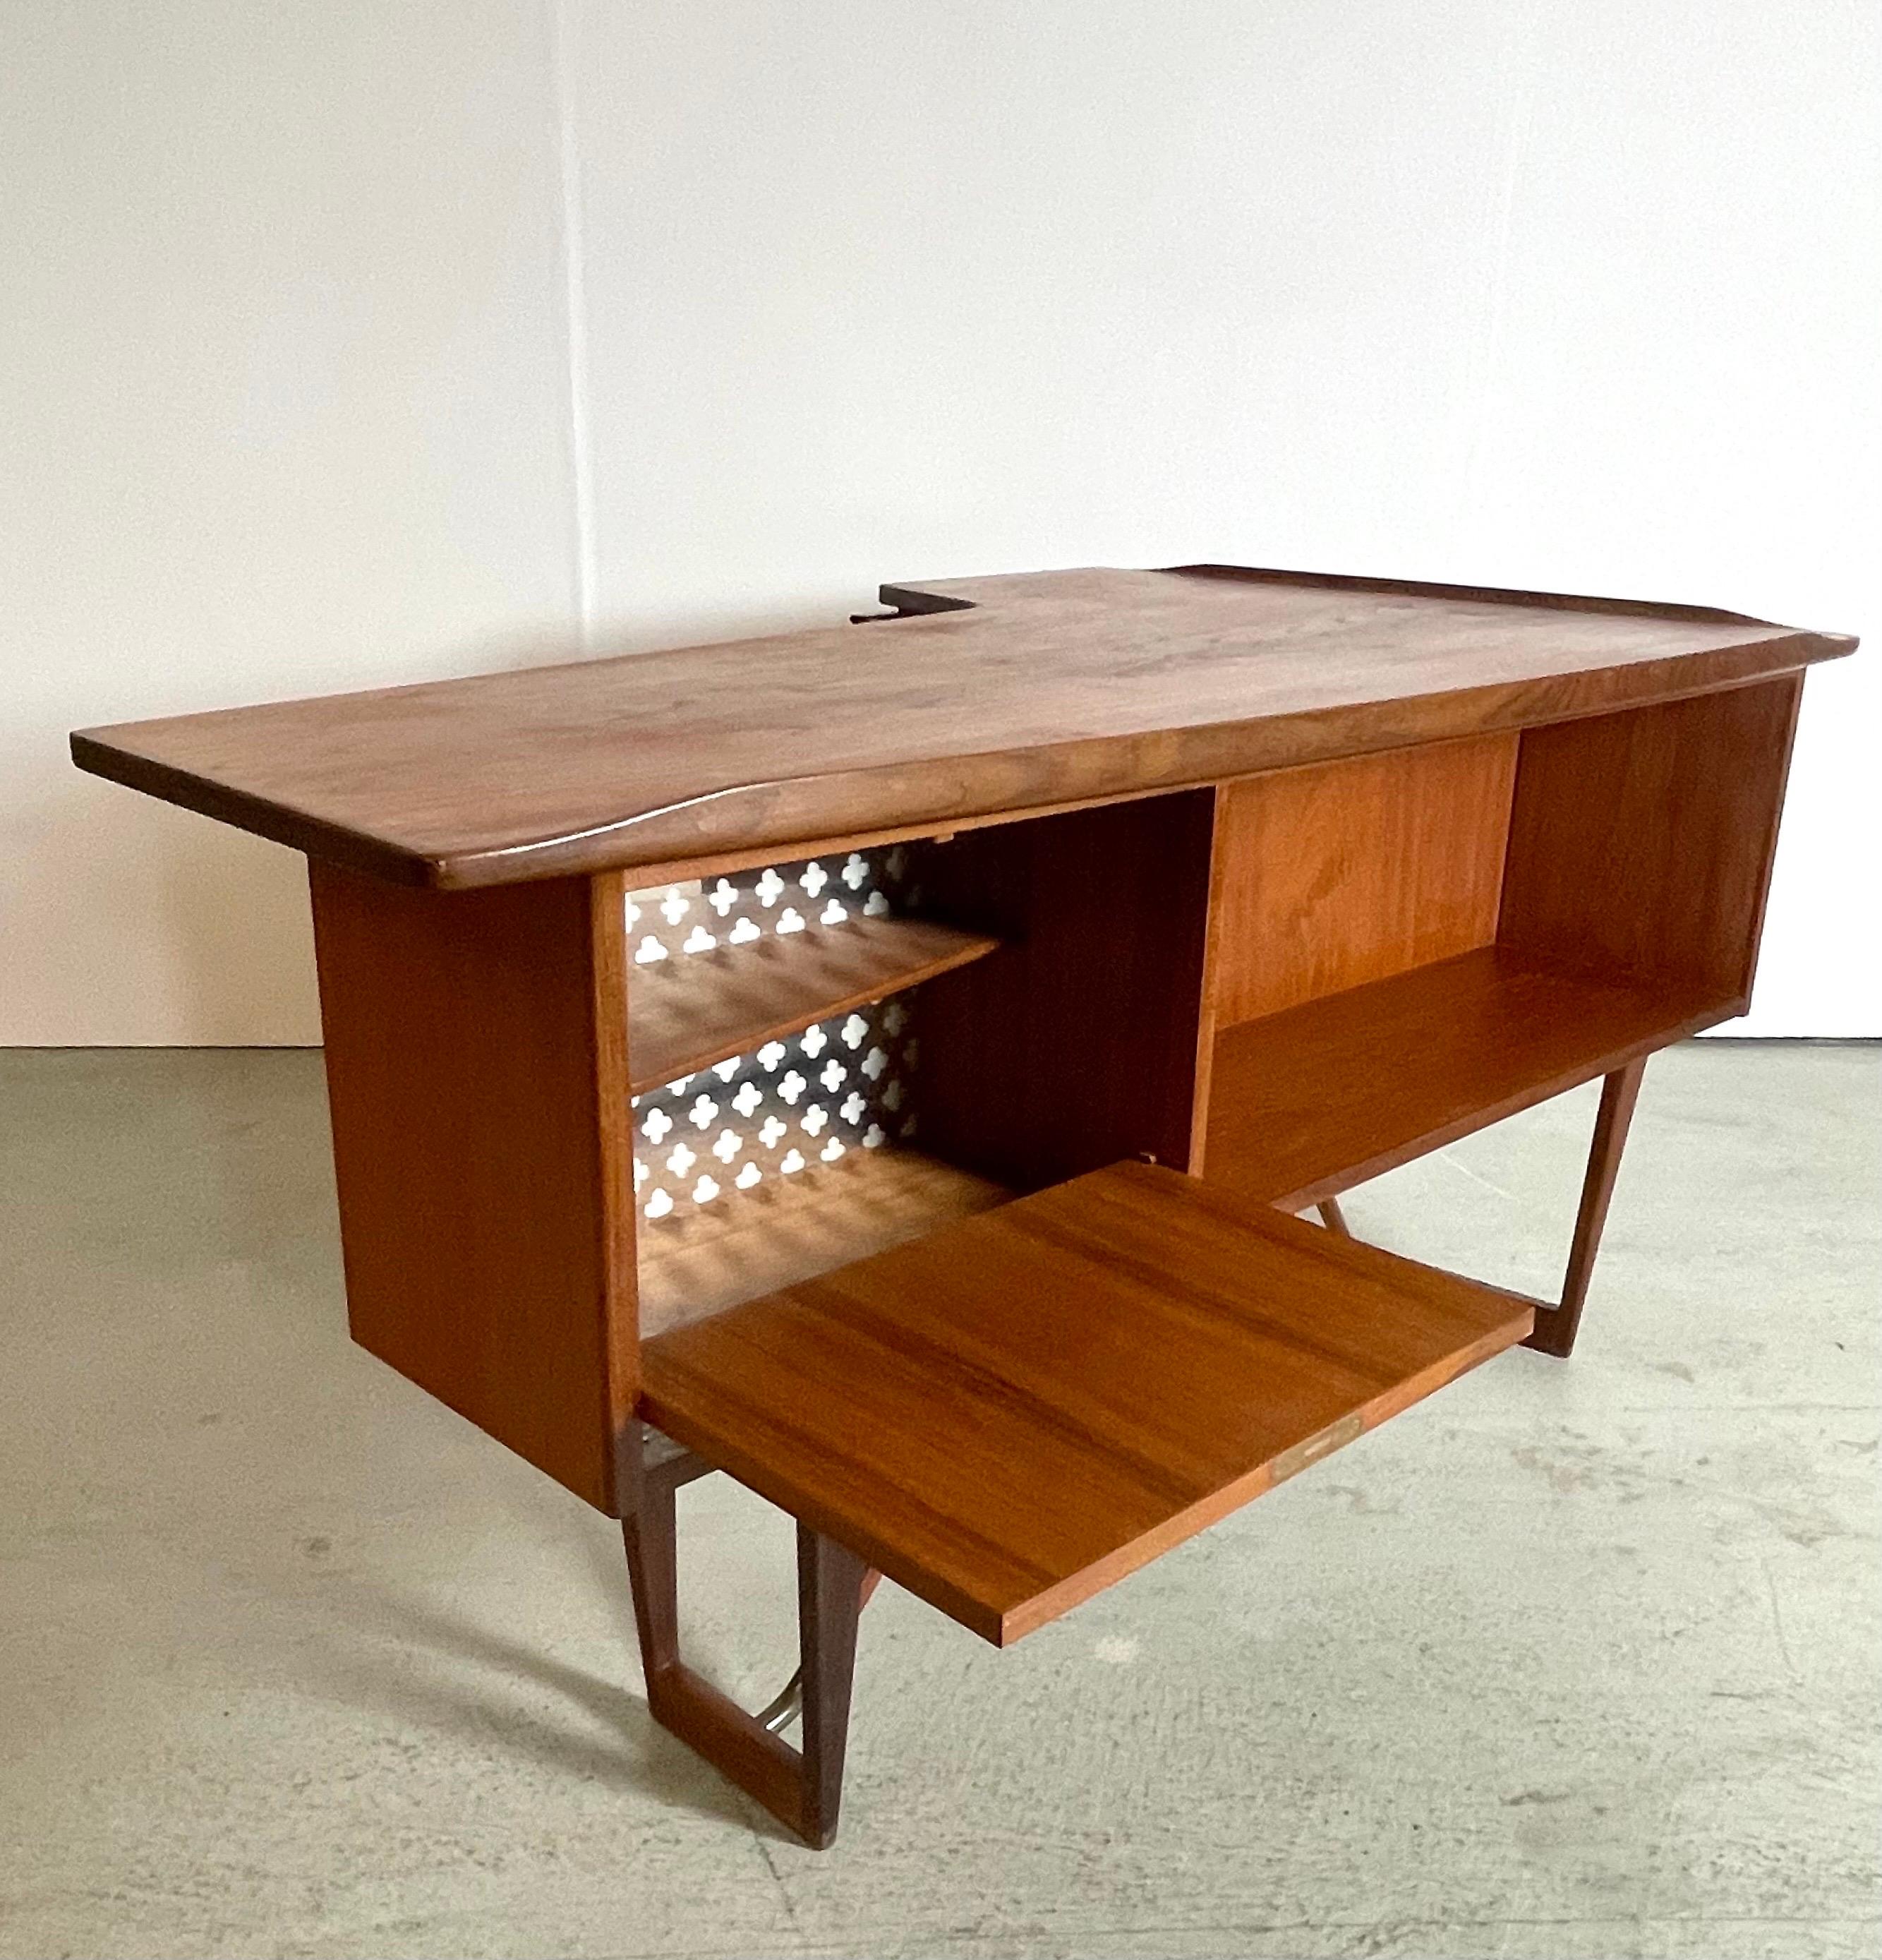 Ein ganz besonderer Schreibtisch, entworfen von Peter Løvig Nielsen. Hergestellt in Dänemark, produziert von Hedensted Møbelfabrik. Er hat eine bumerangförmige Tischplatte mit hochgezogenen Kanten, drei Schubladen auf der Vorderseite und einen